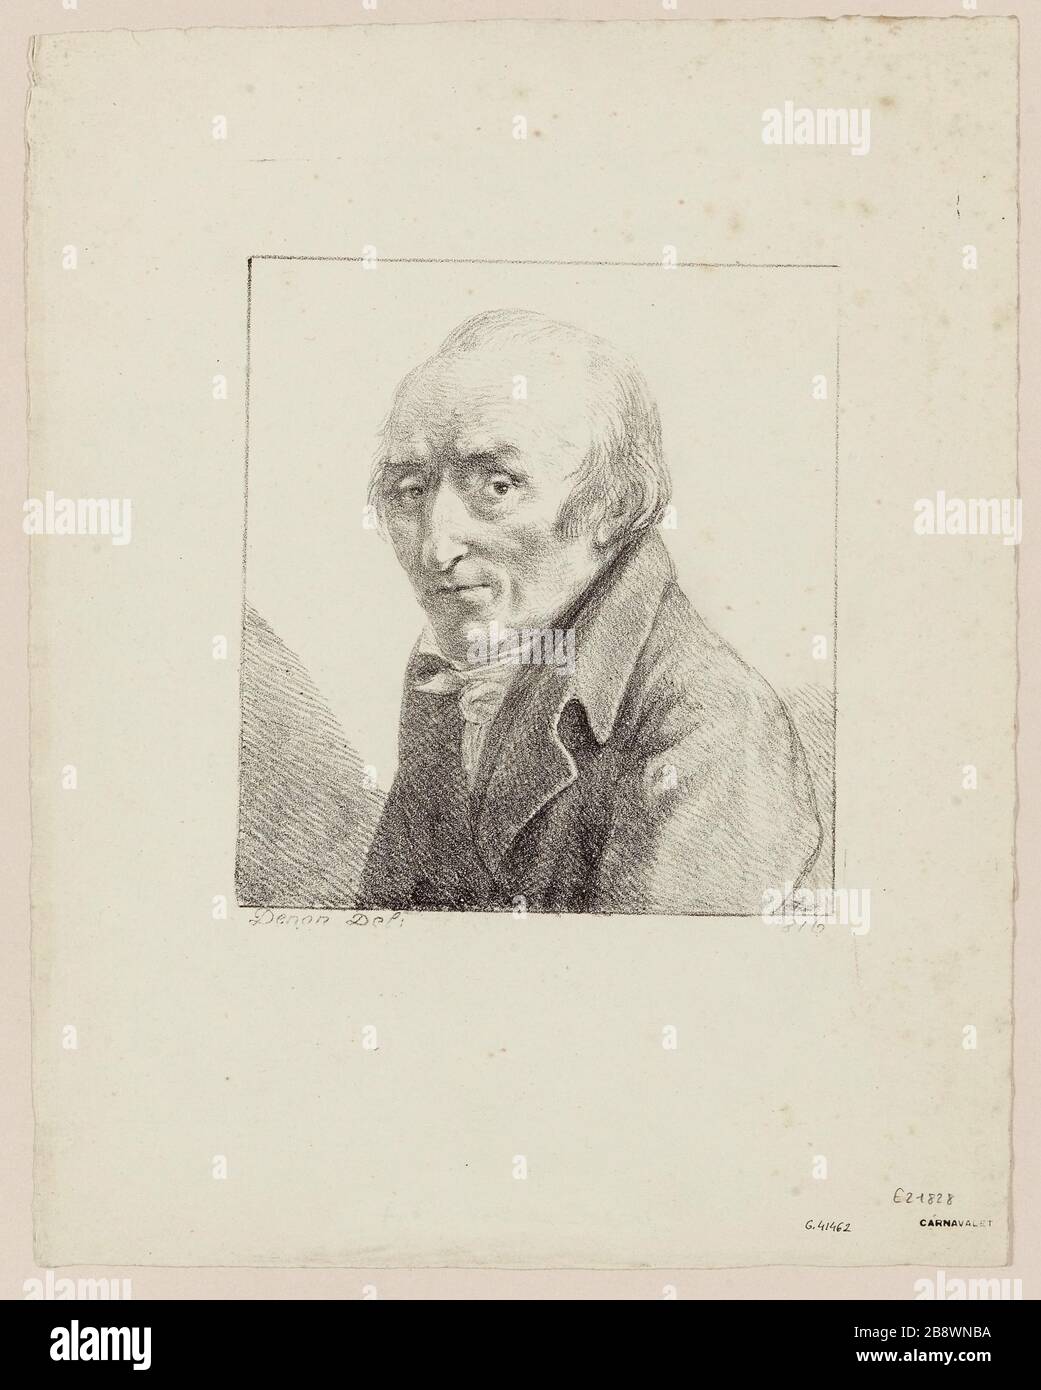 Dominique Vivant Baron Denon, sagte Vivant Denon oder Vivant Denon (1747-1825), Schriftsteller, Diplomat und französischer Verwalter. Stockfoto